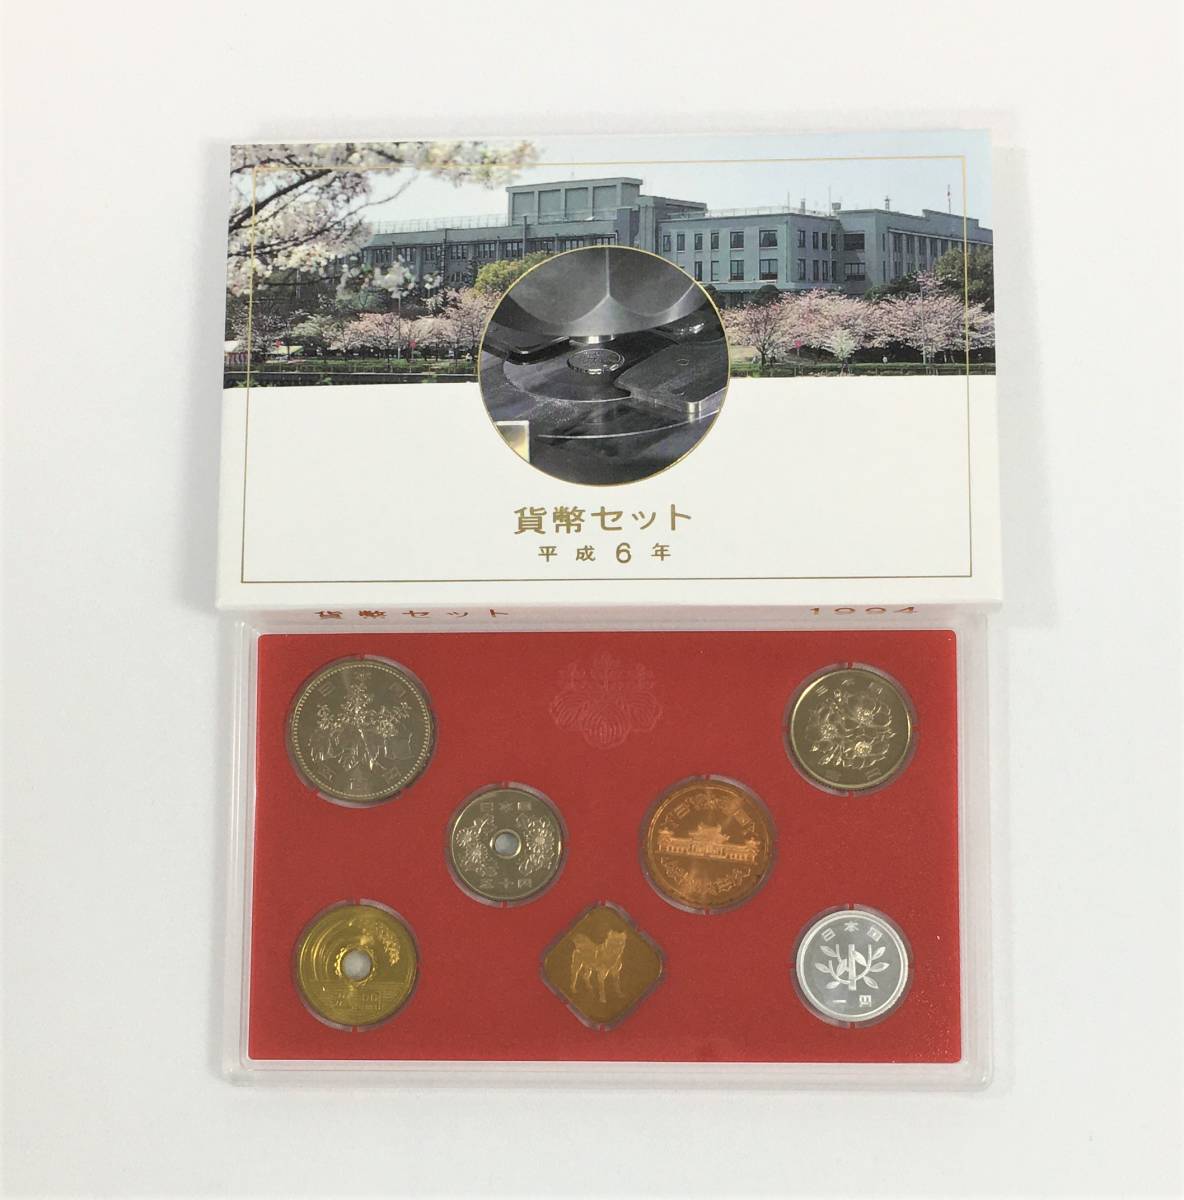 大蔵省 造幣局 ミント貨幣セット 6セット